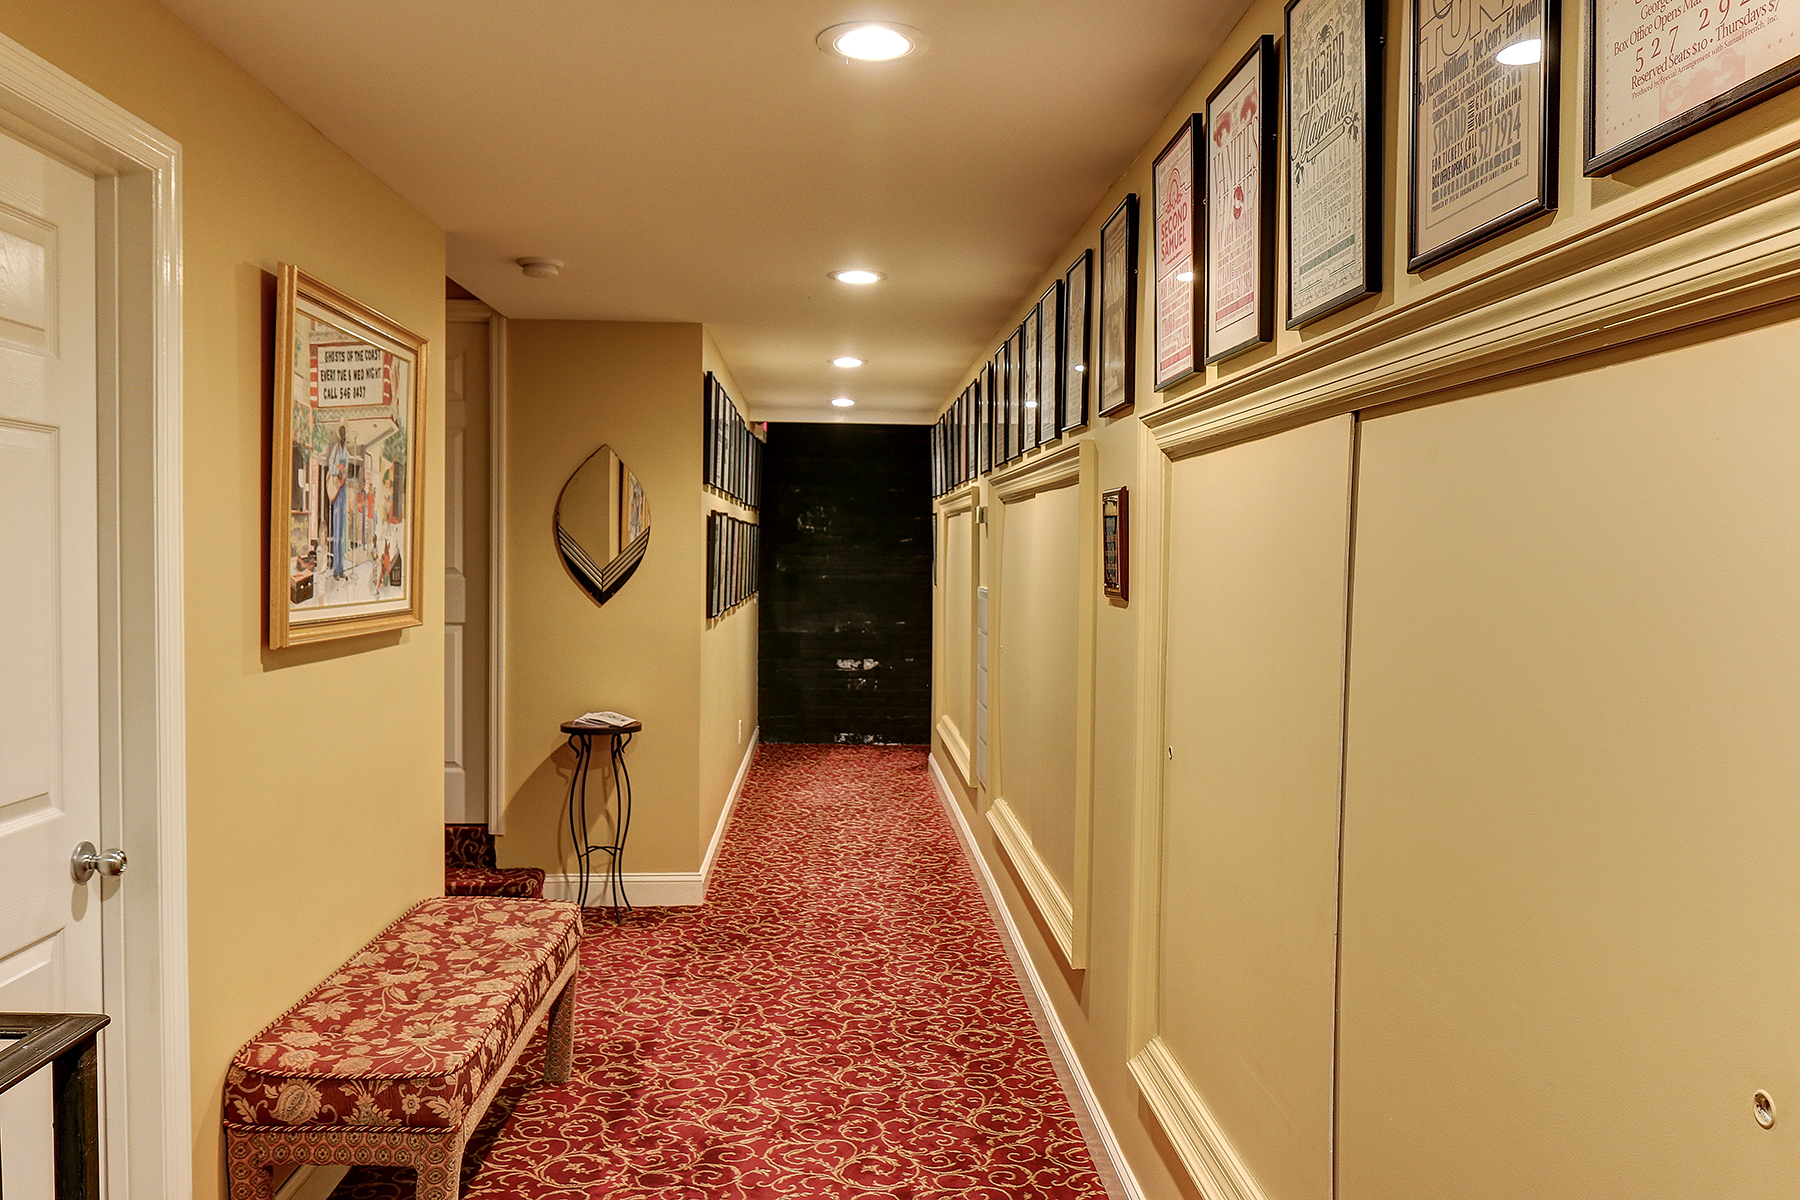 Strand Theater - upstairs hall MLS.jpg